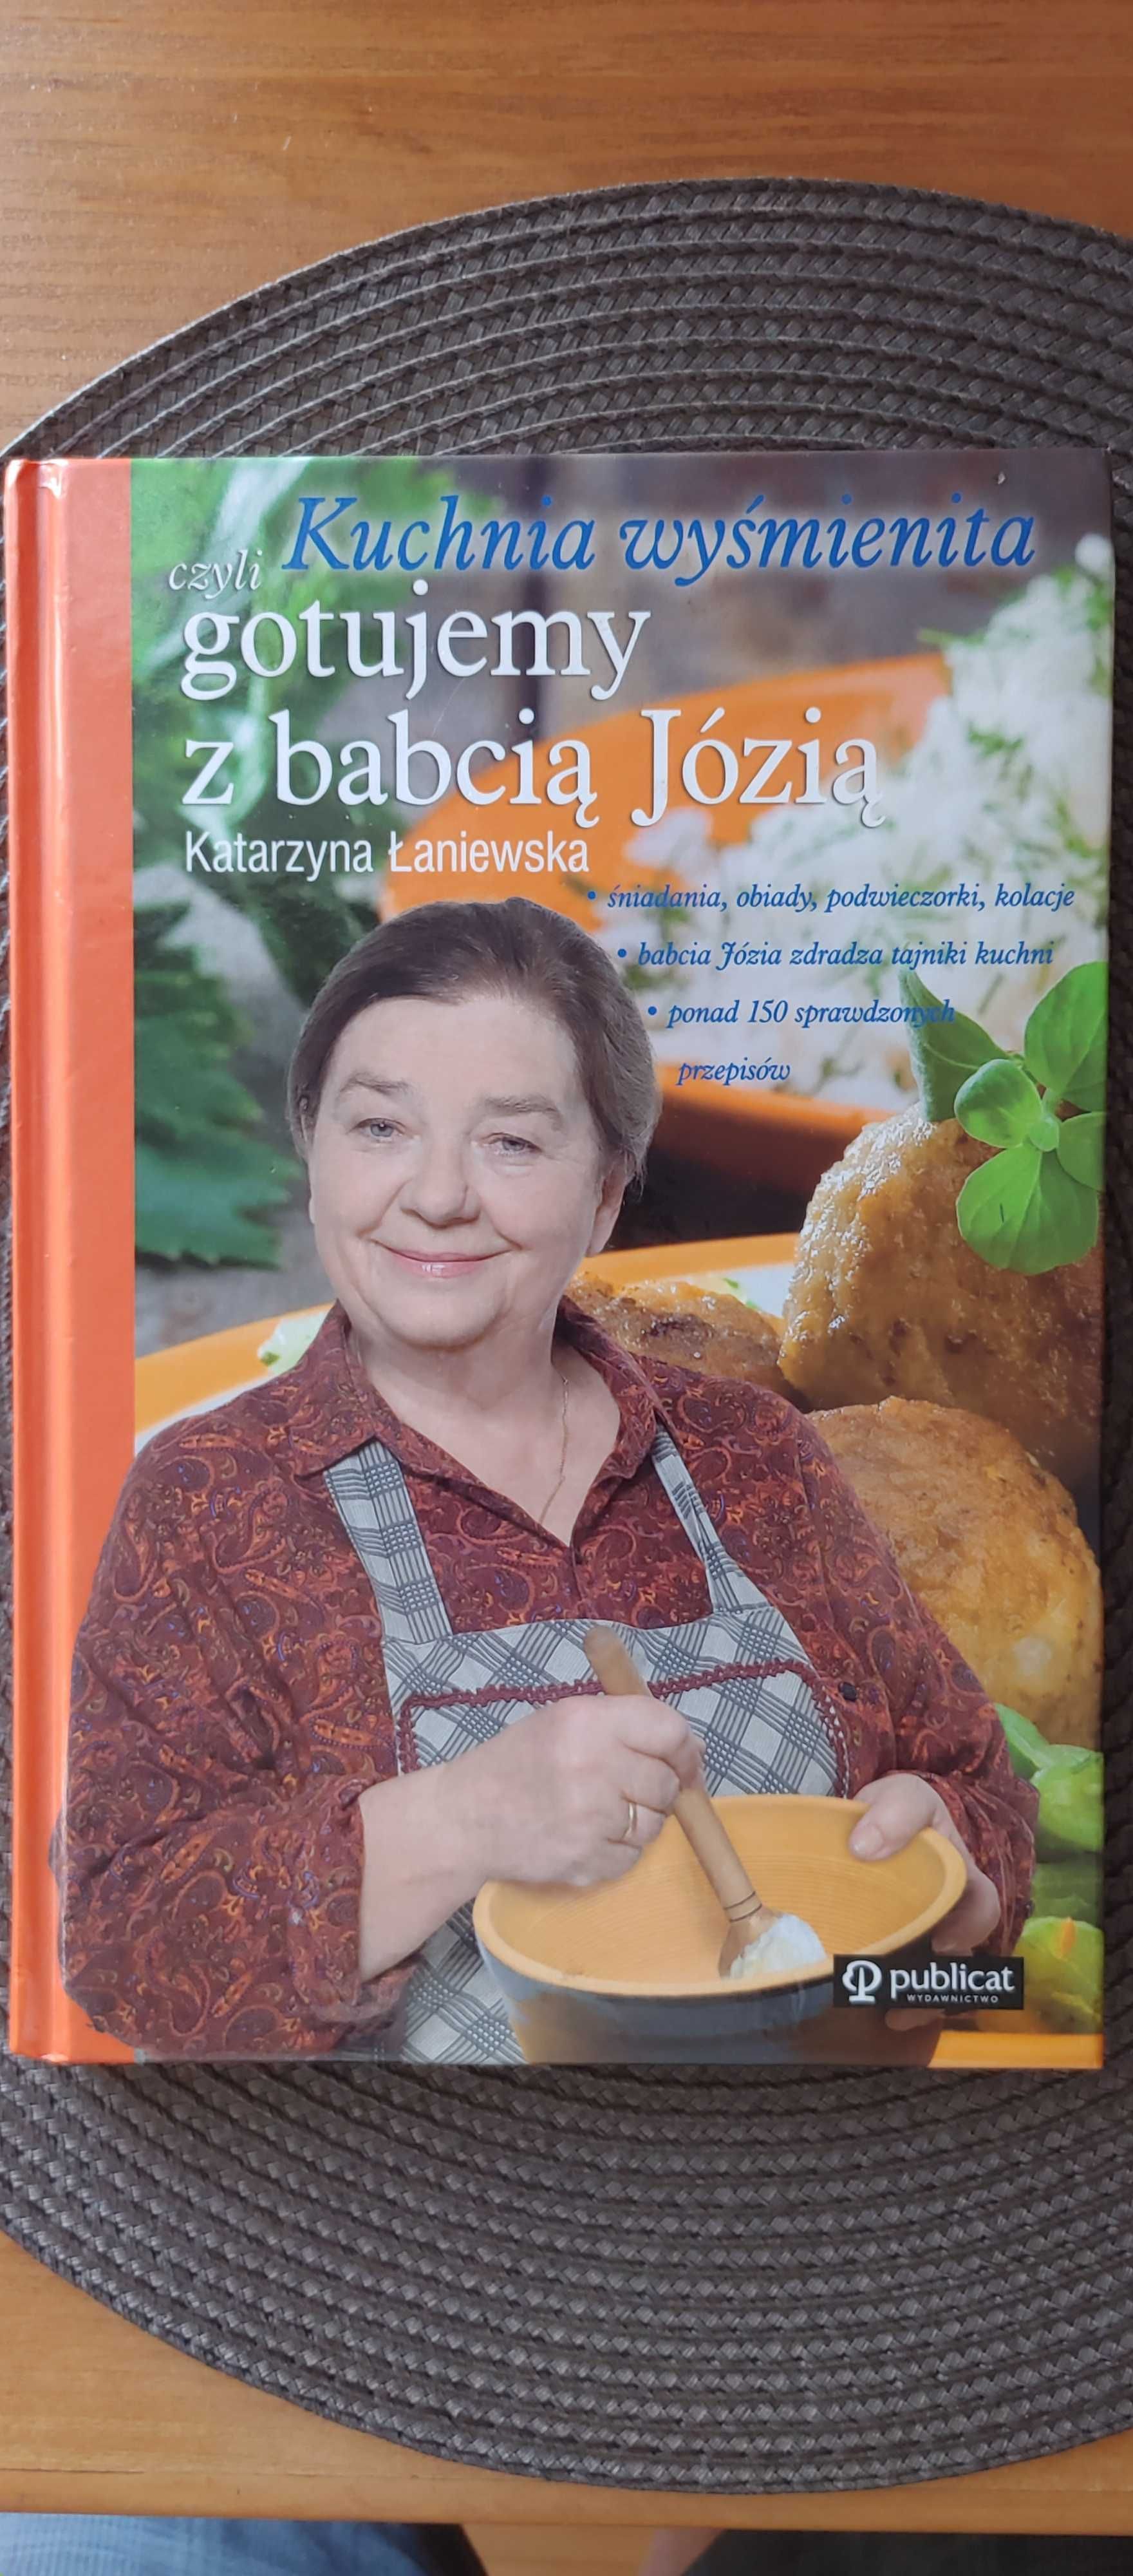 "Kuchnia wyśmienita czyli gotujemy z babcią Jóźią" - książka kulinarna